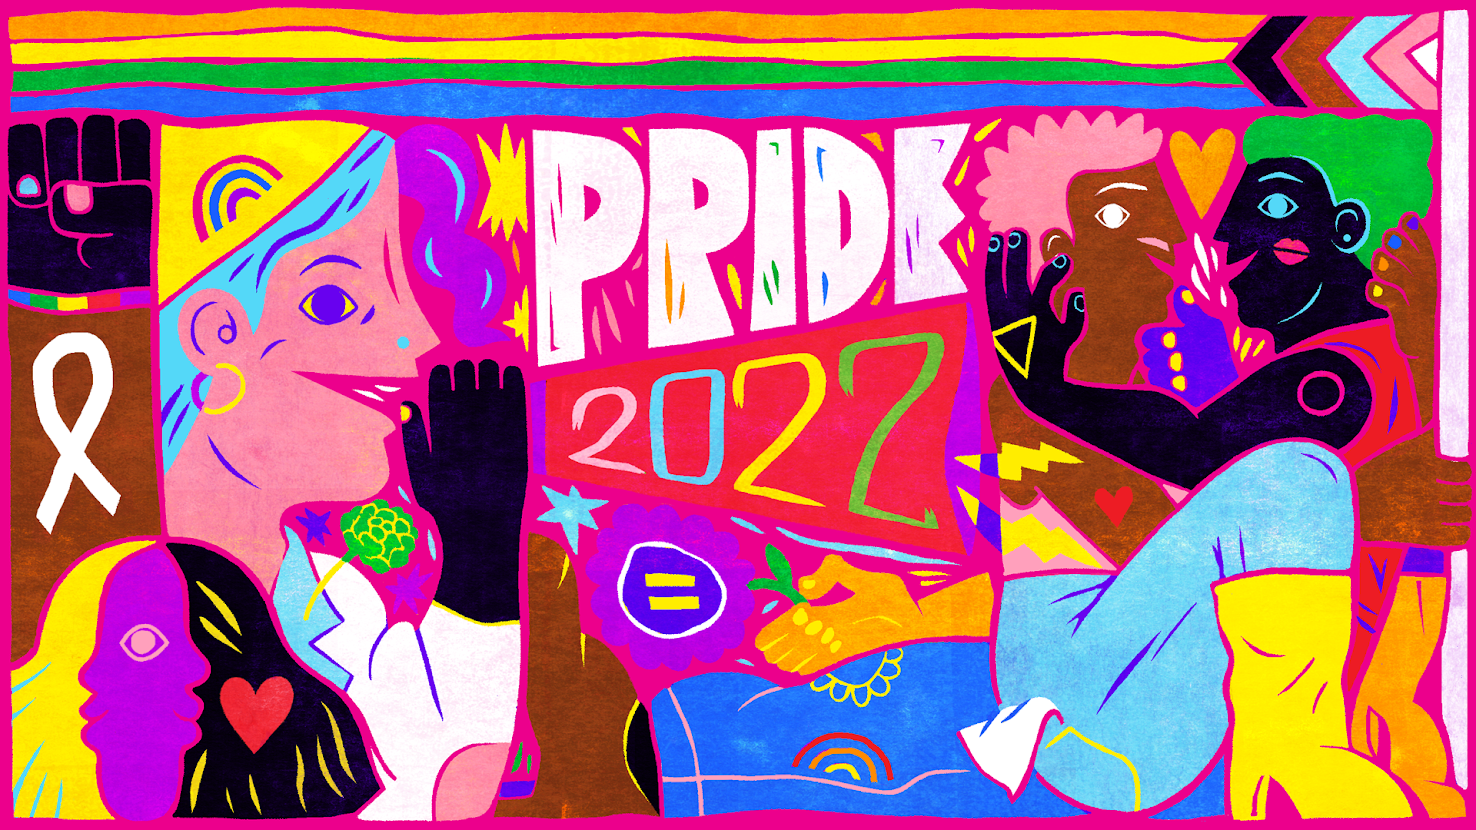 buzzfeed pride graphic